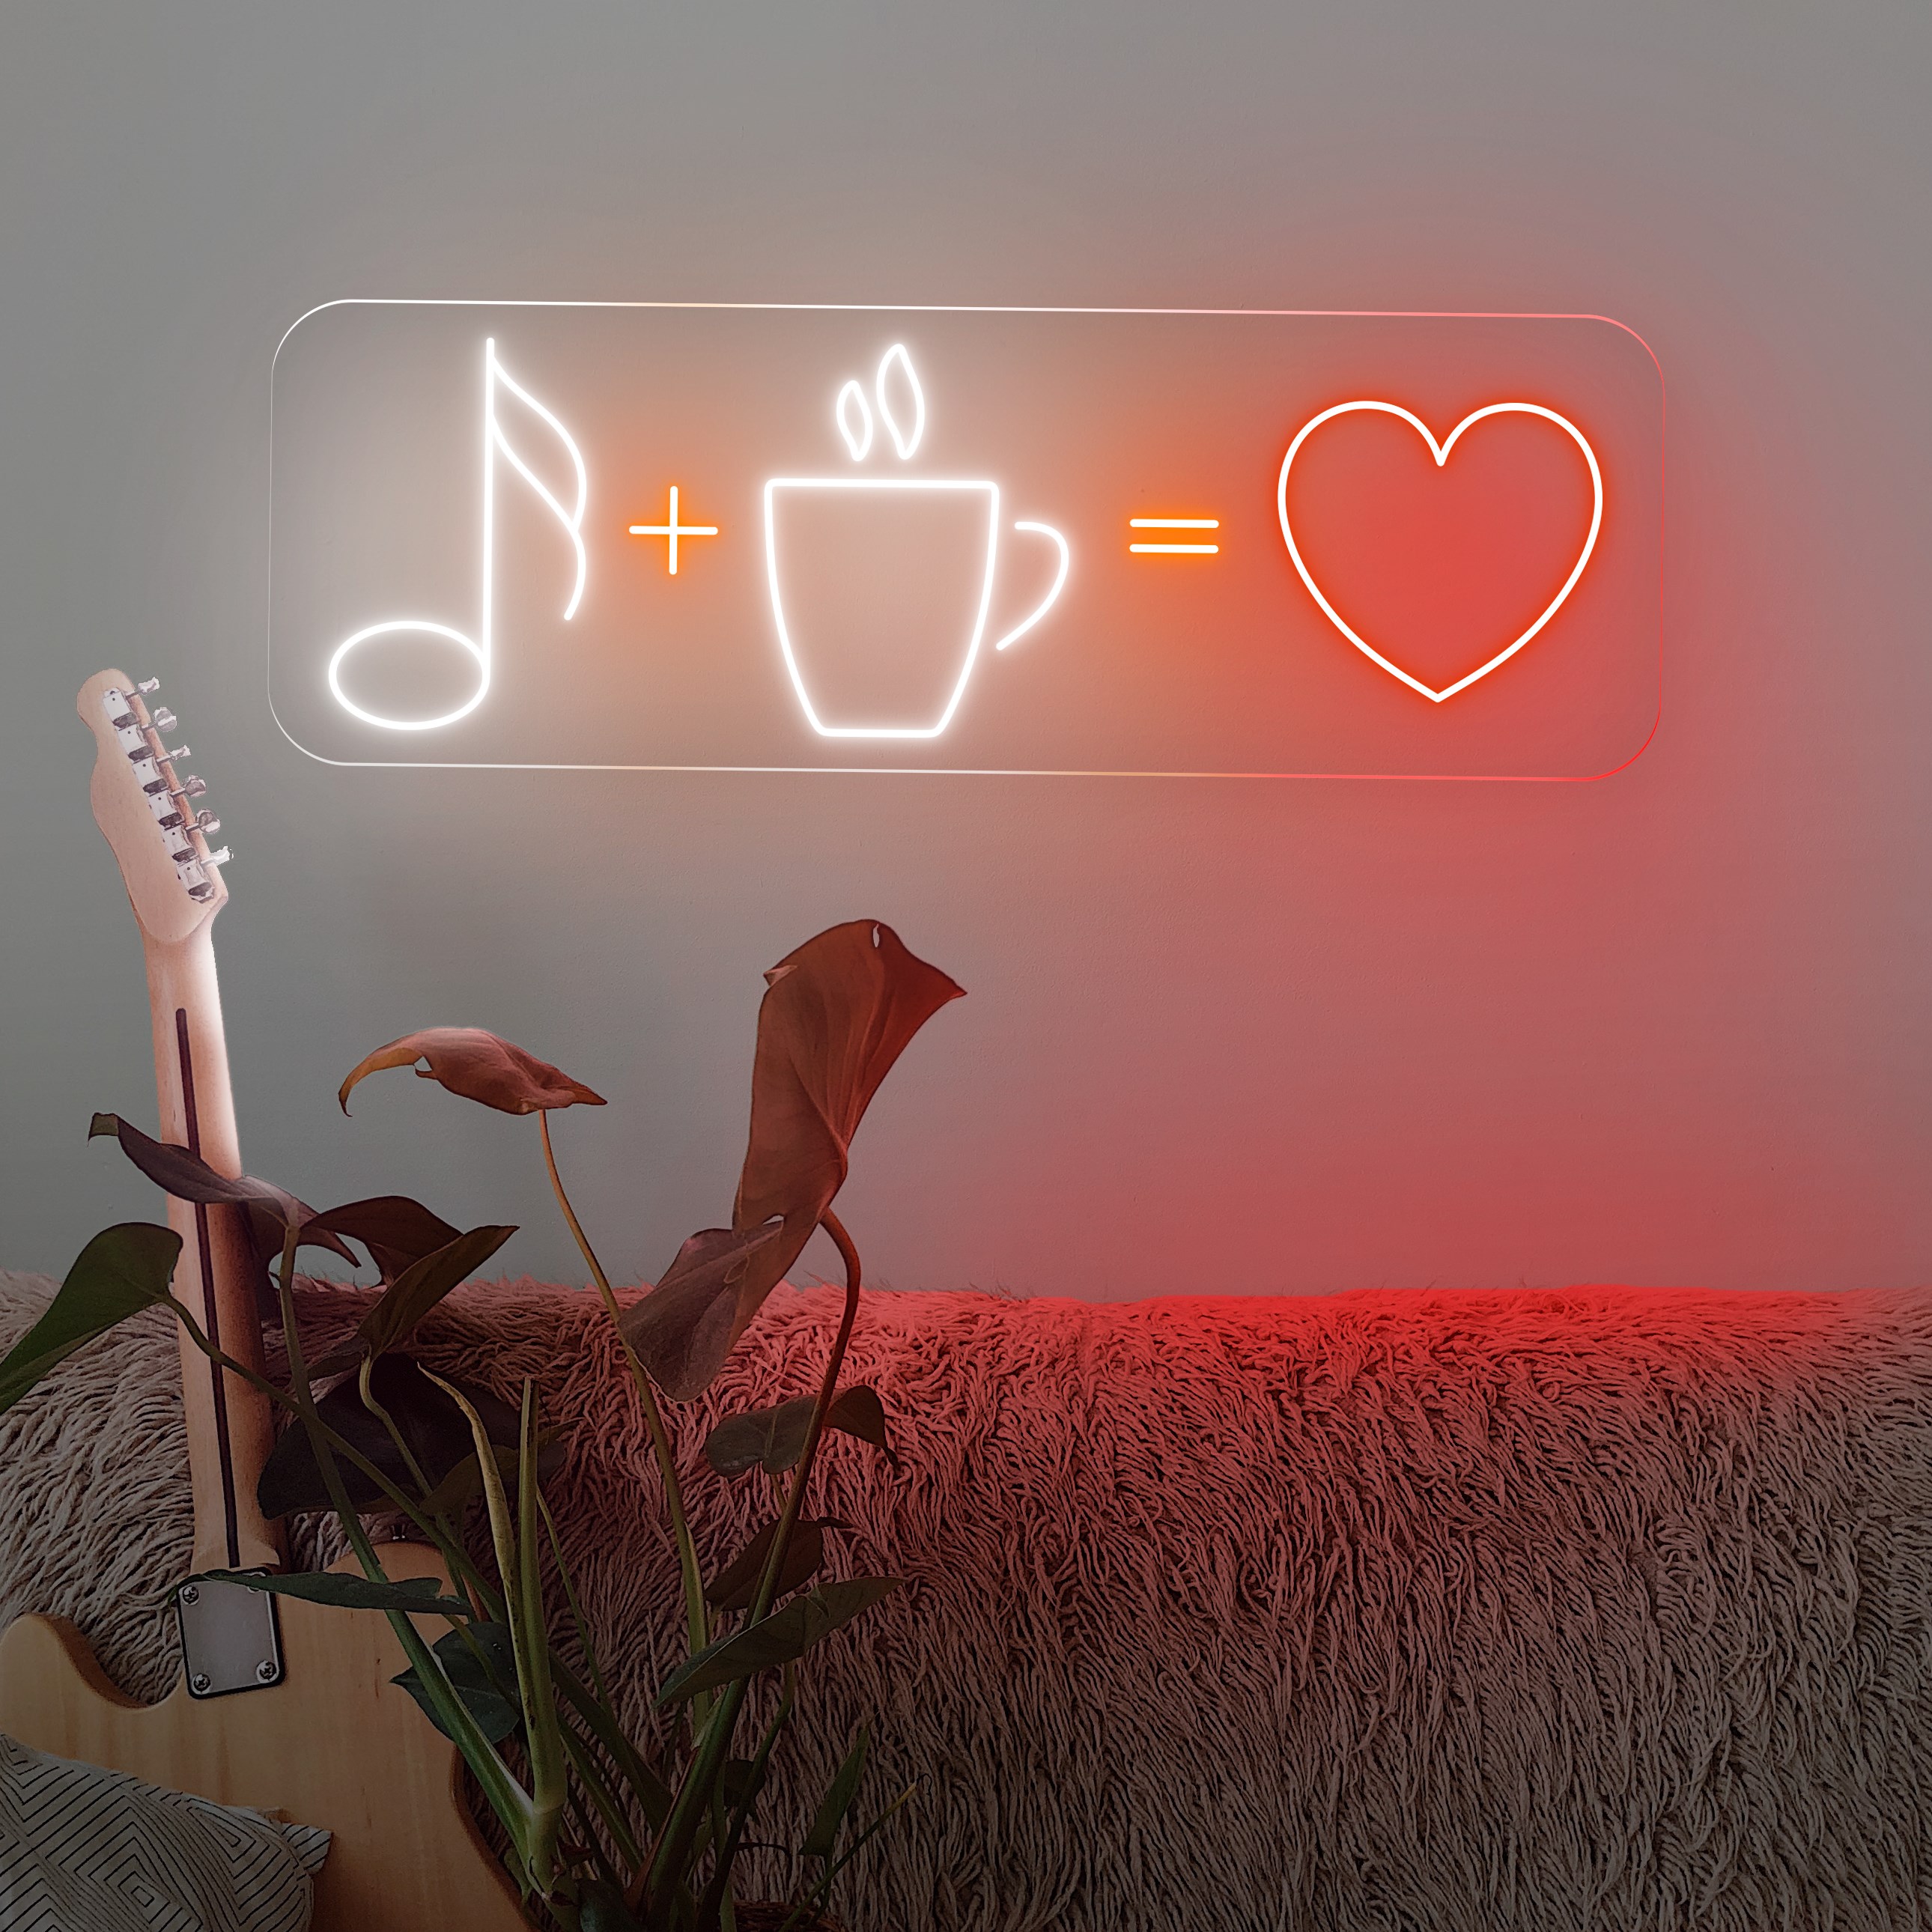 Imagem de Néon "Coffee + Music = Love"